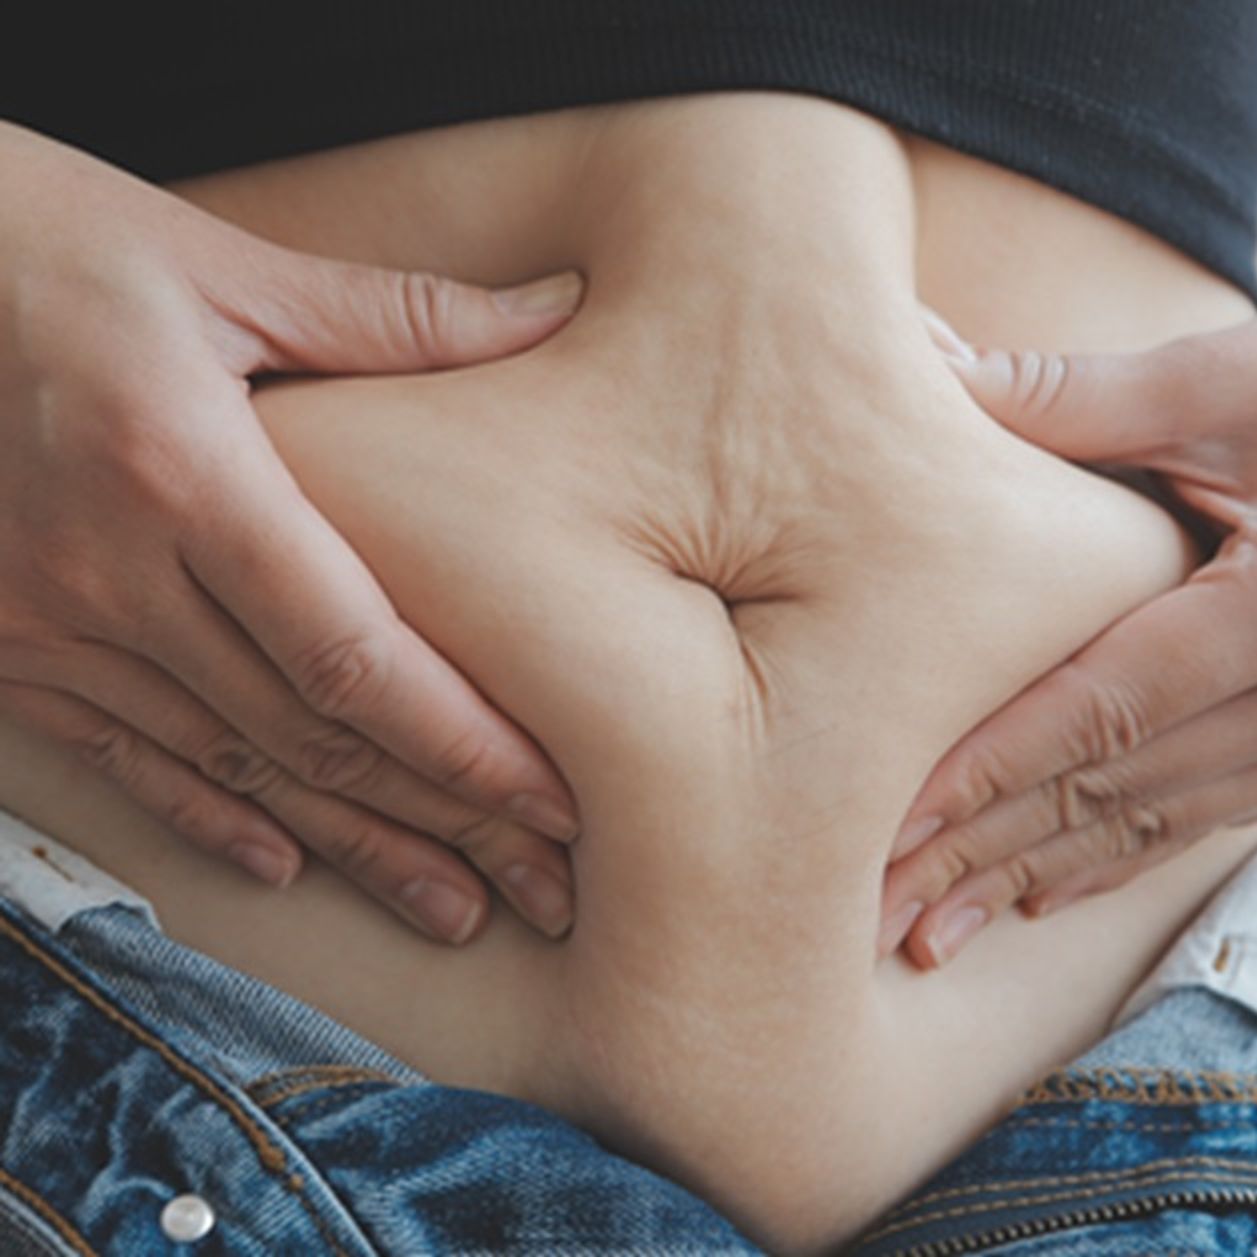 graisse abdominale : cette mauvaise habitude favorise la prise de poids au niveau du ventre, selon des experts